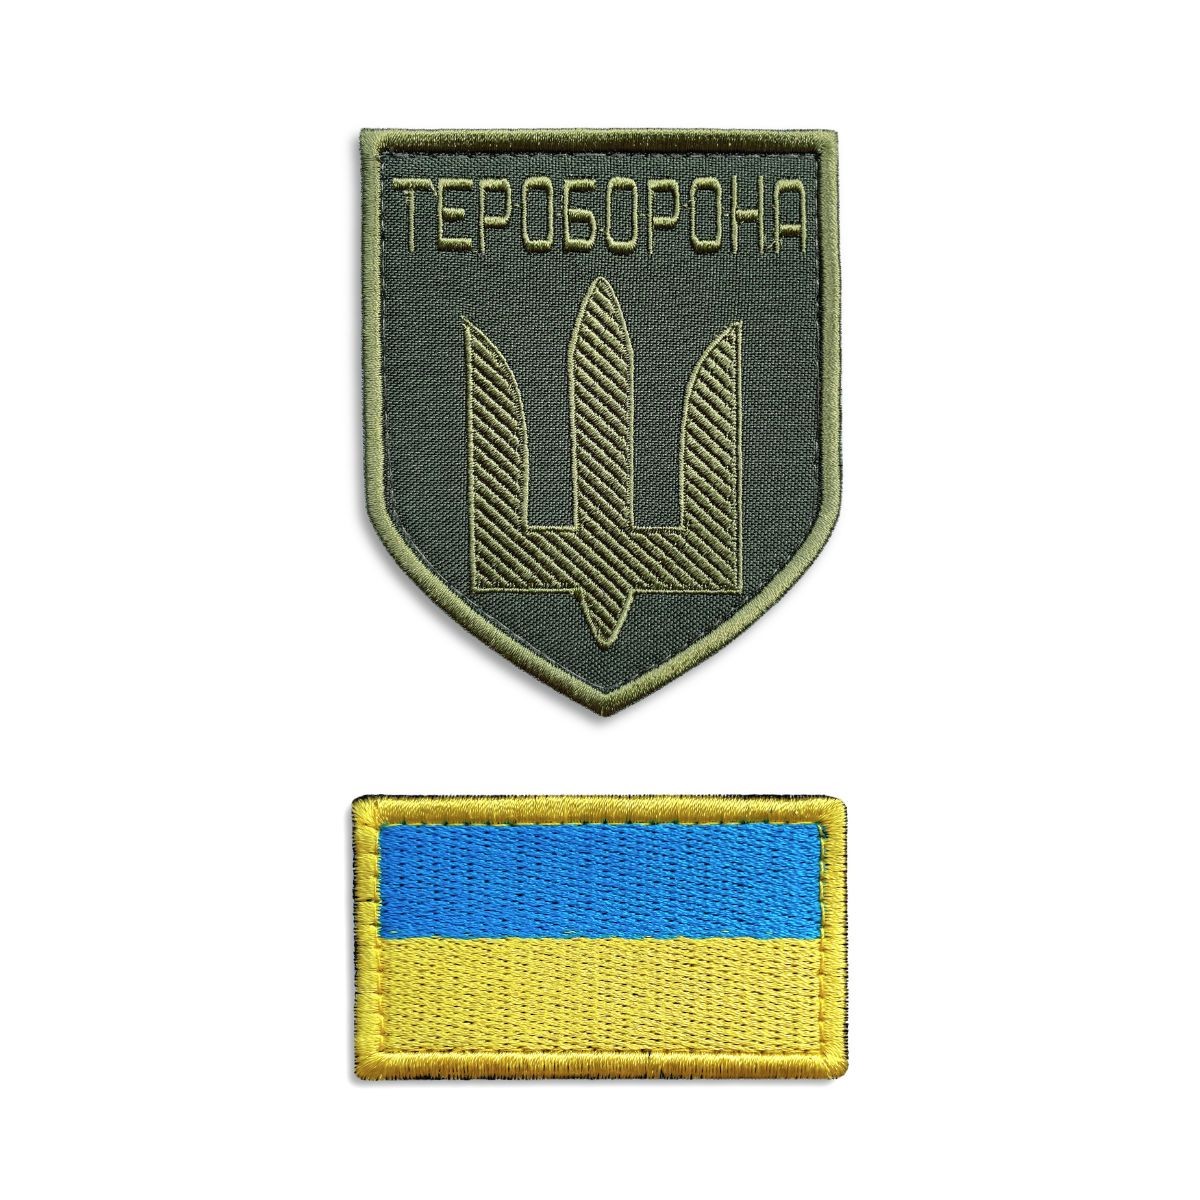 SET OF CHEVRONS ON VELCRO TEROBORON AND THE FLAG OF UKRAINE 2 PCS